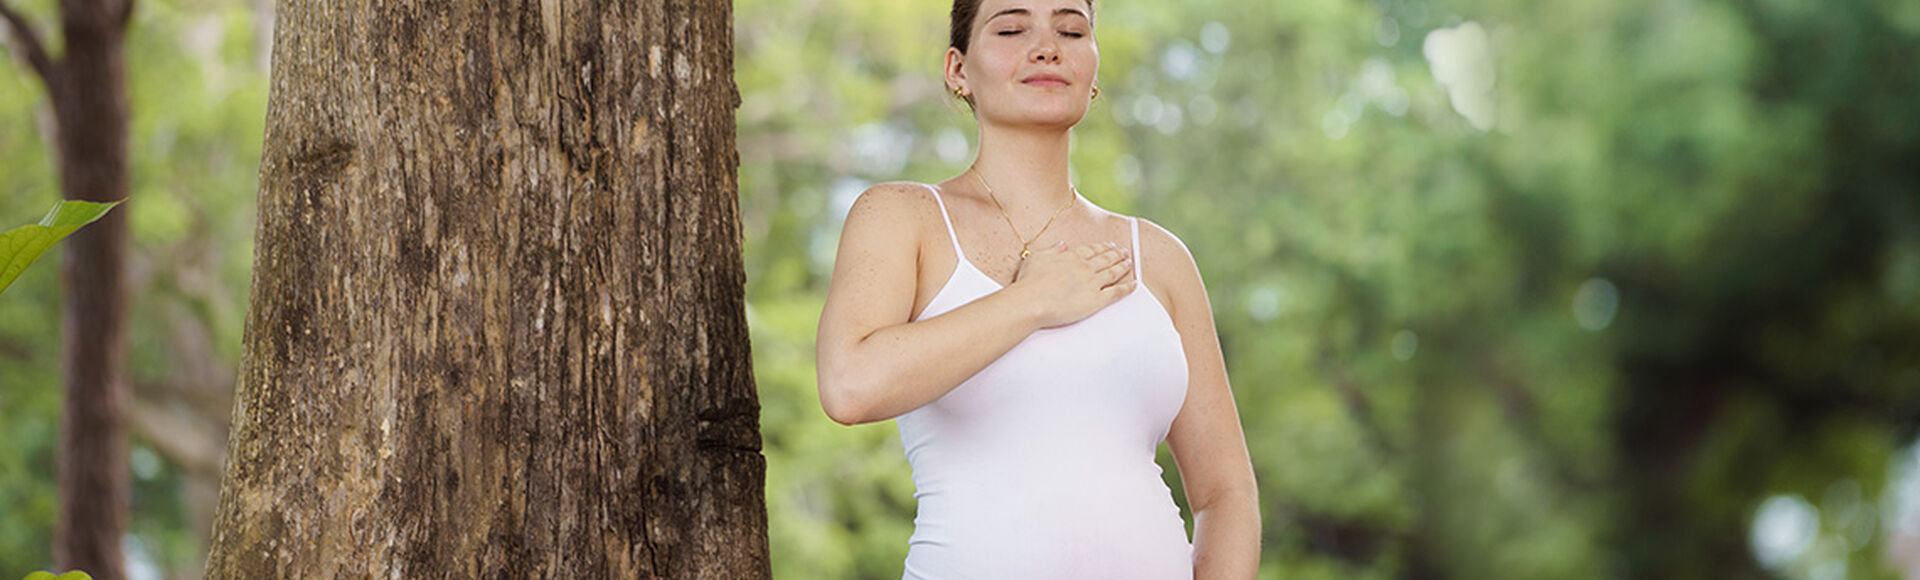 Tu cuerpo en la semana 26 de embarazo | Más Abrazos by Huggies